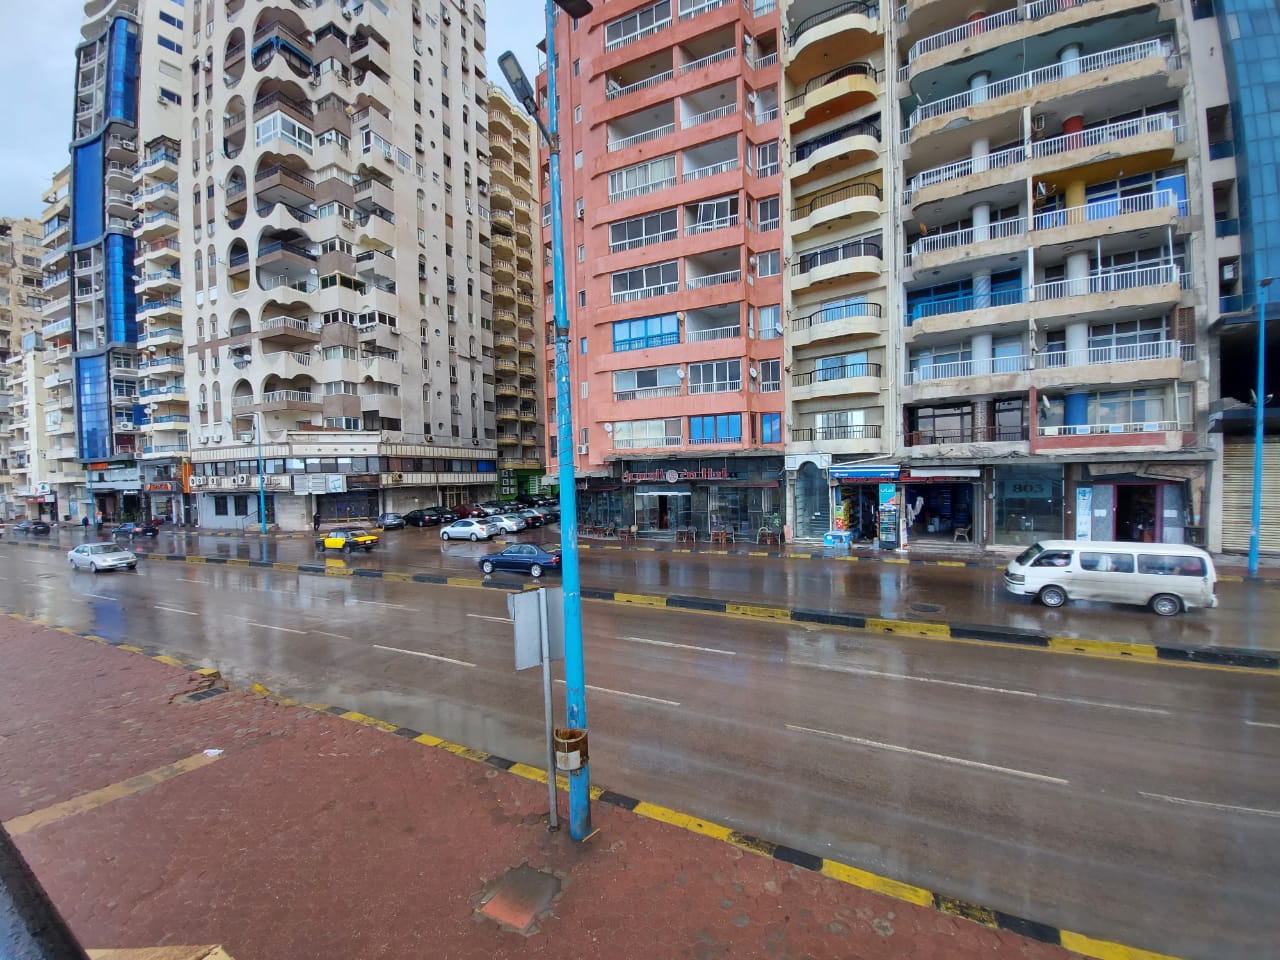 جانب من أمطار الإسكندرية